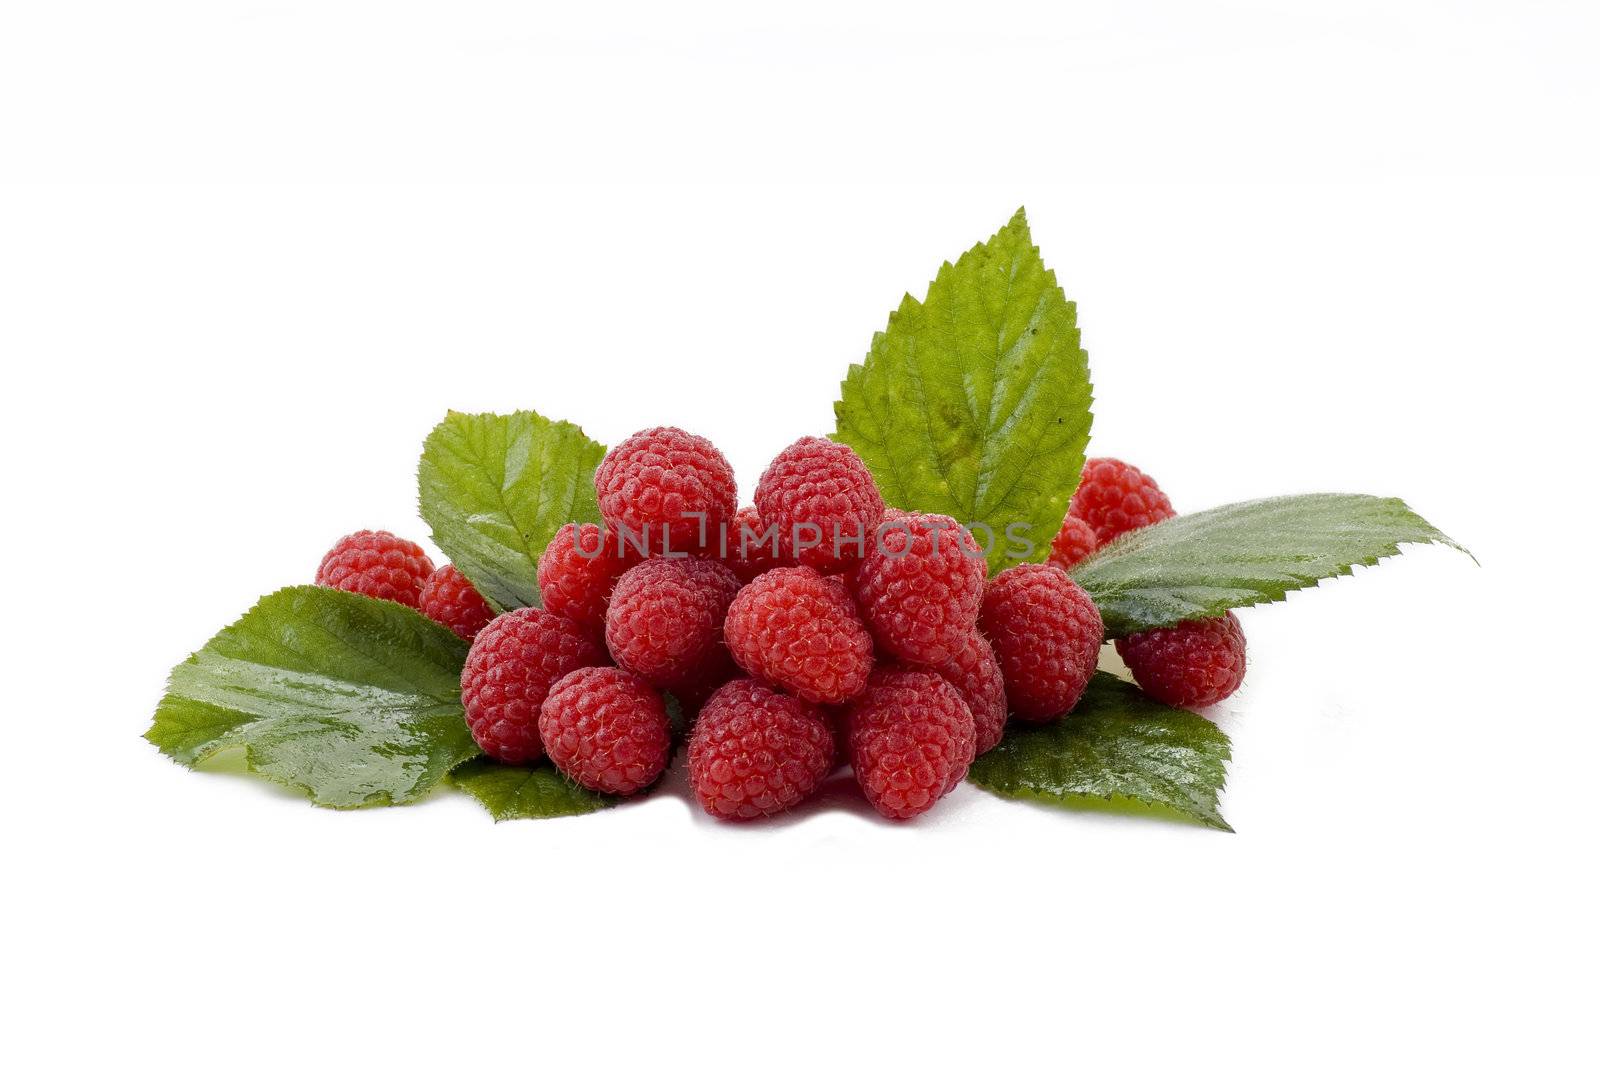 Raspberries by caldix